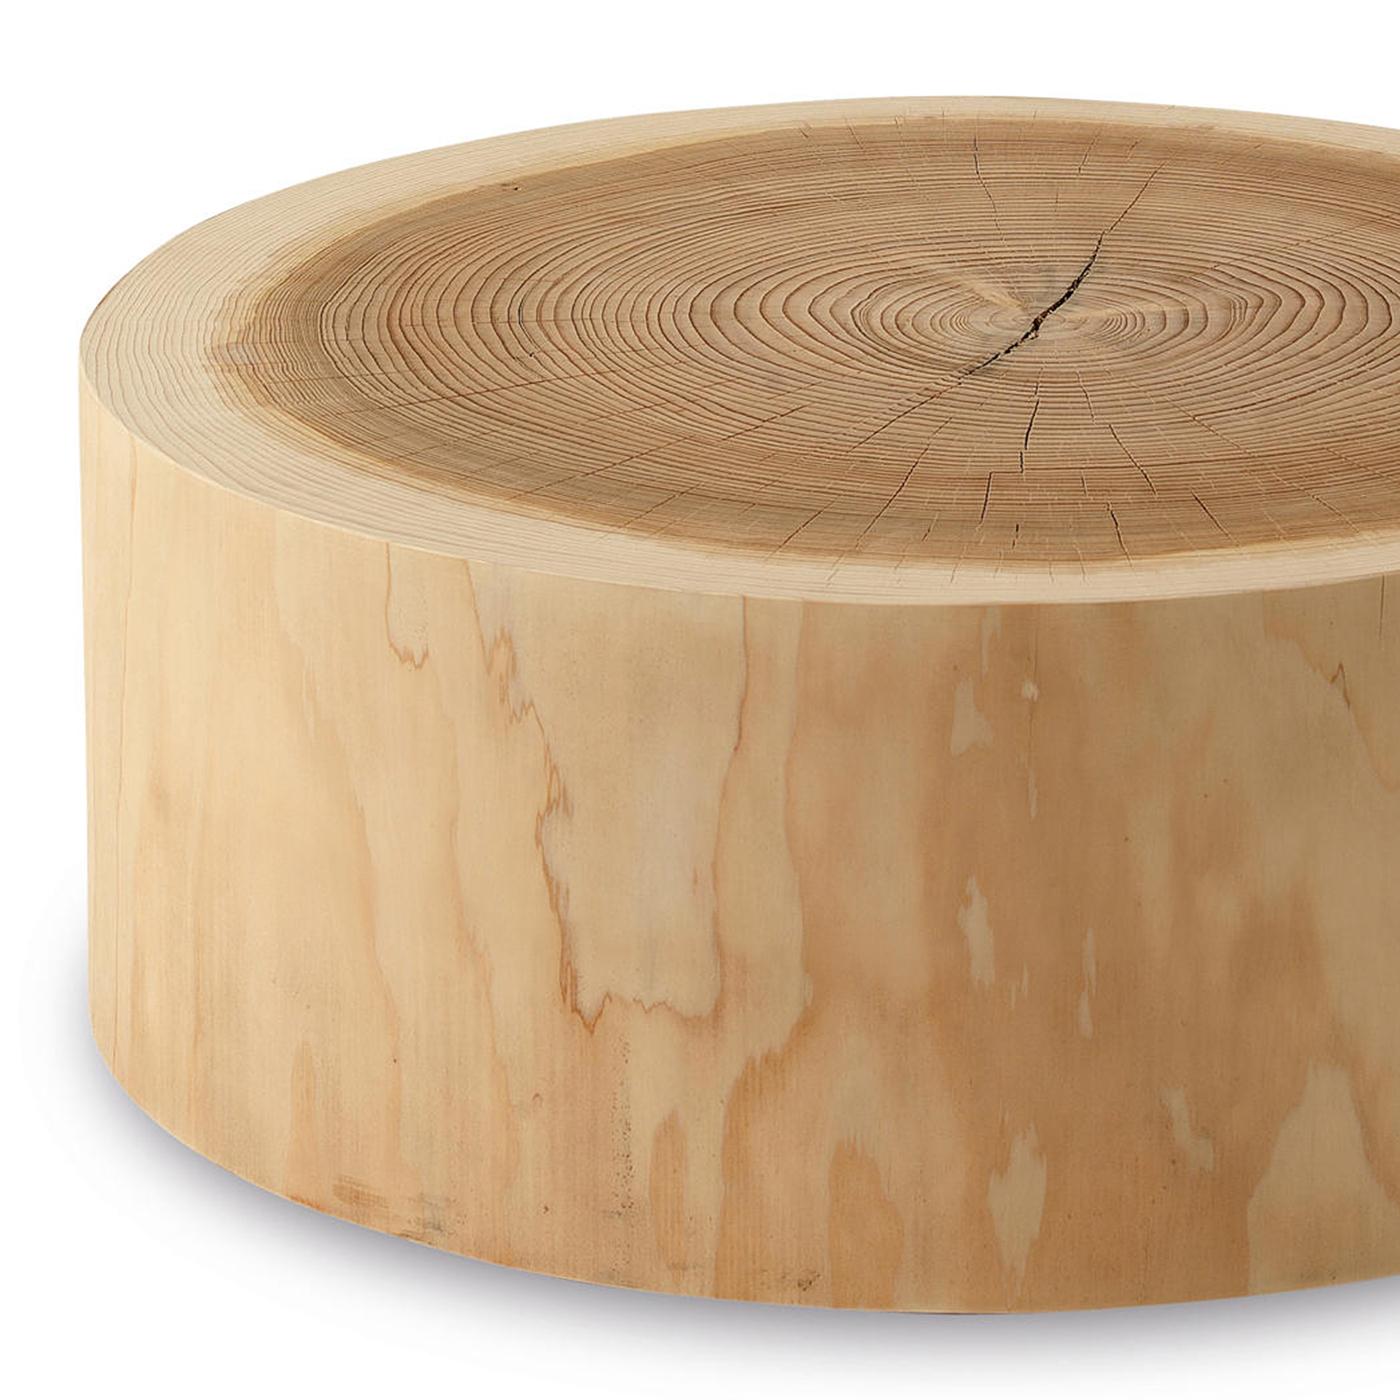 Table basse bloc cèdre entièrement réalisée à la main
en bois de cèdre massif. Traités avec des extraits naturels de pin.
Le bois de cèdre massif comprend le mouvement, 
les fissures et les changements dans les conditions du bois, 
C'est la